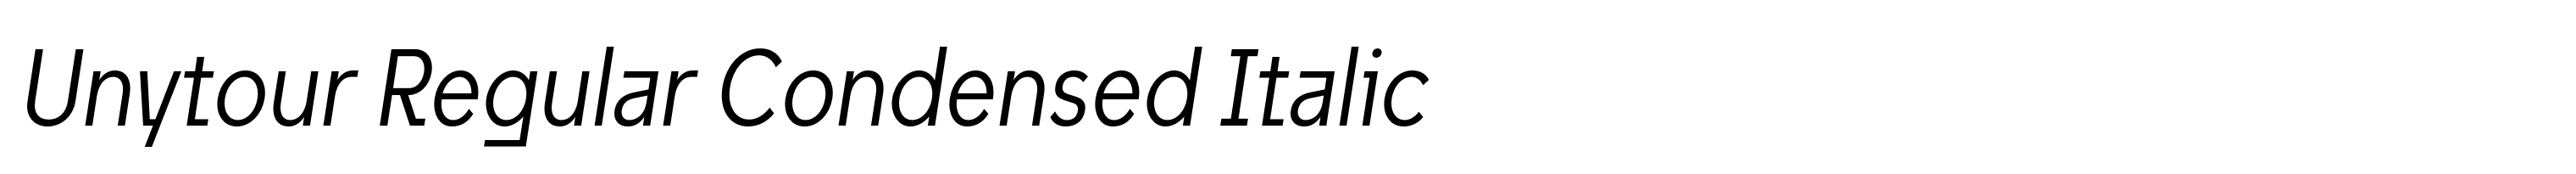 Unytour Regular Condensed Italic